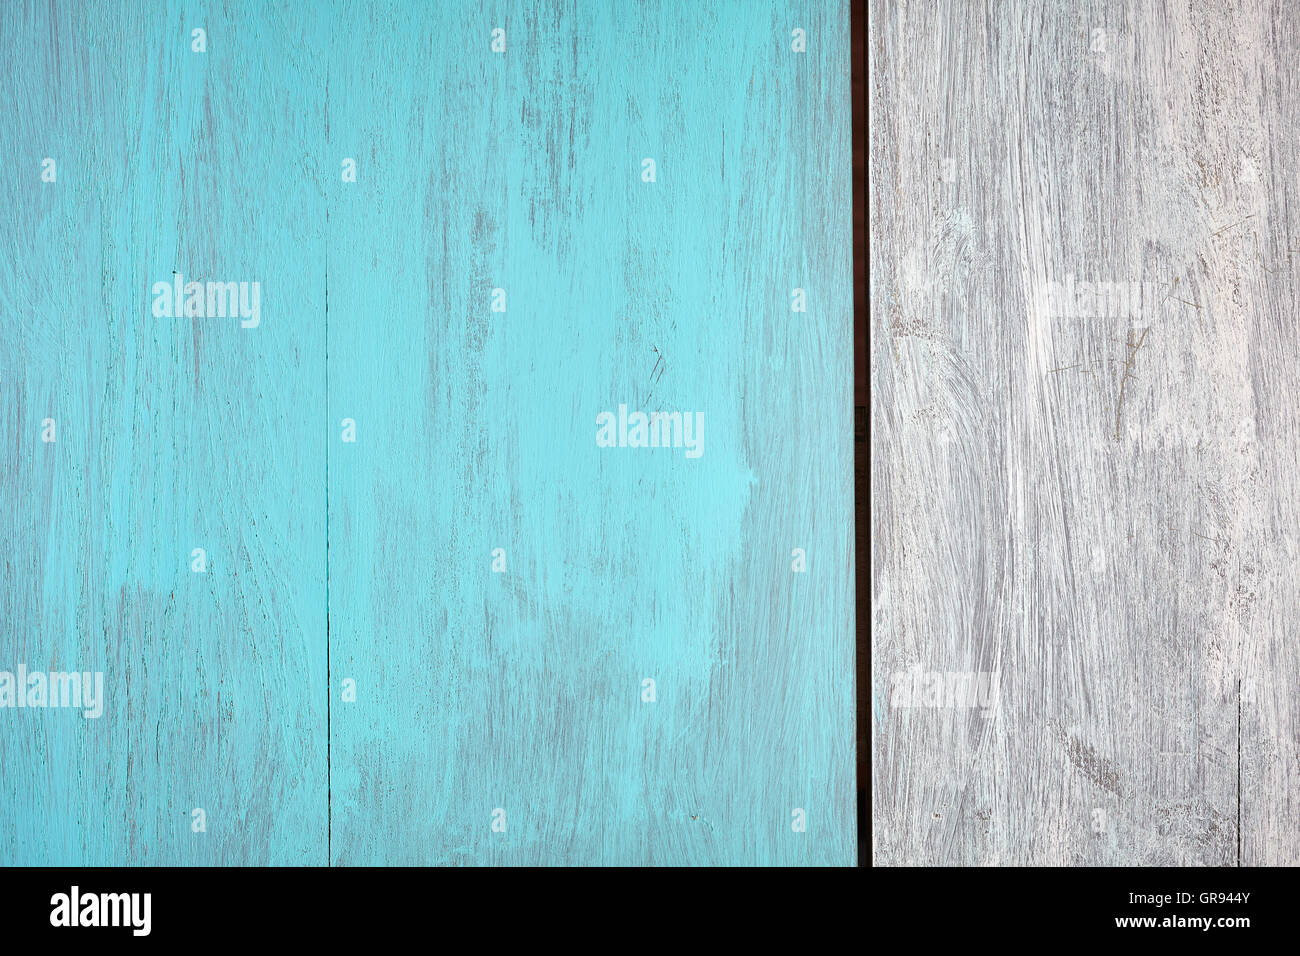 Rustico blu e bianco di legno verniciato tabella, vista da sopra, copia dello spazio. Foto Stock